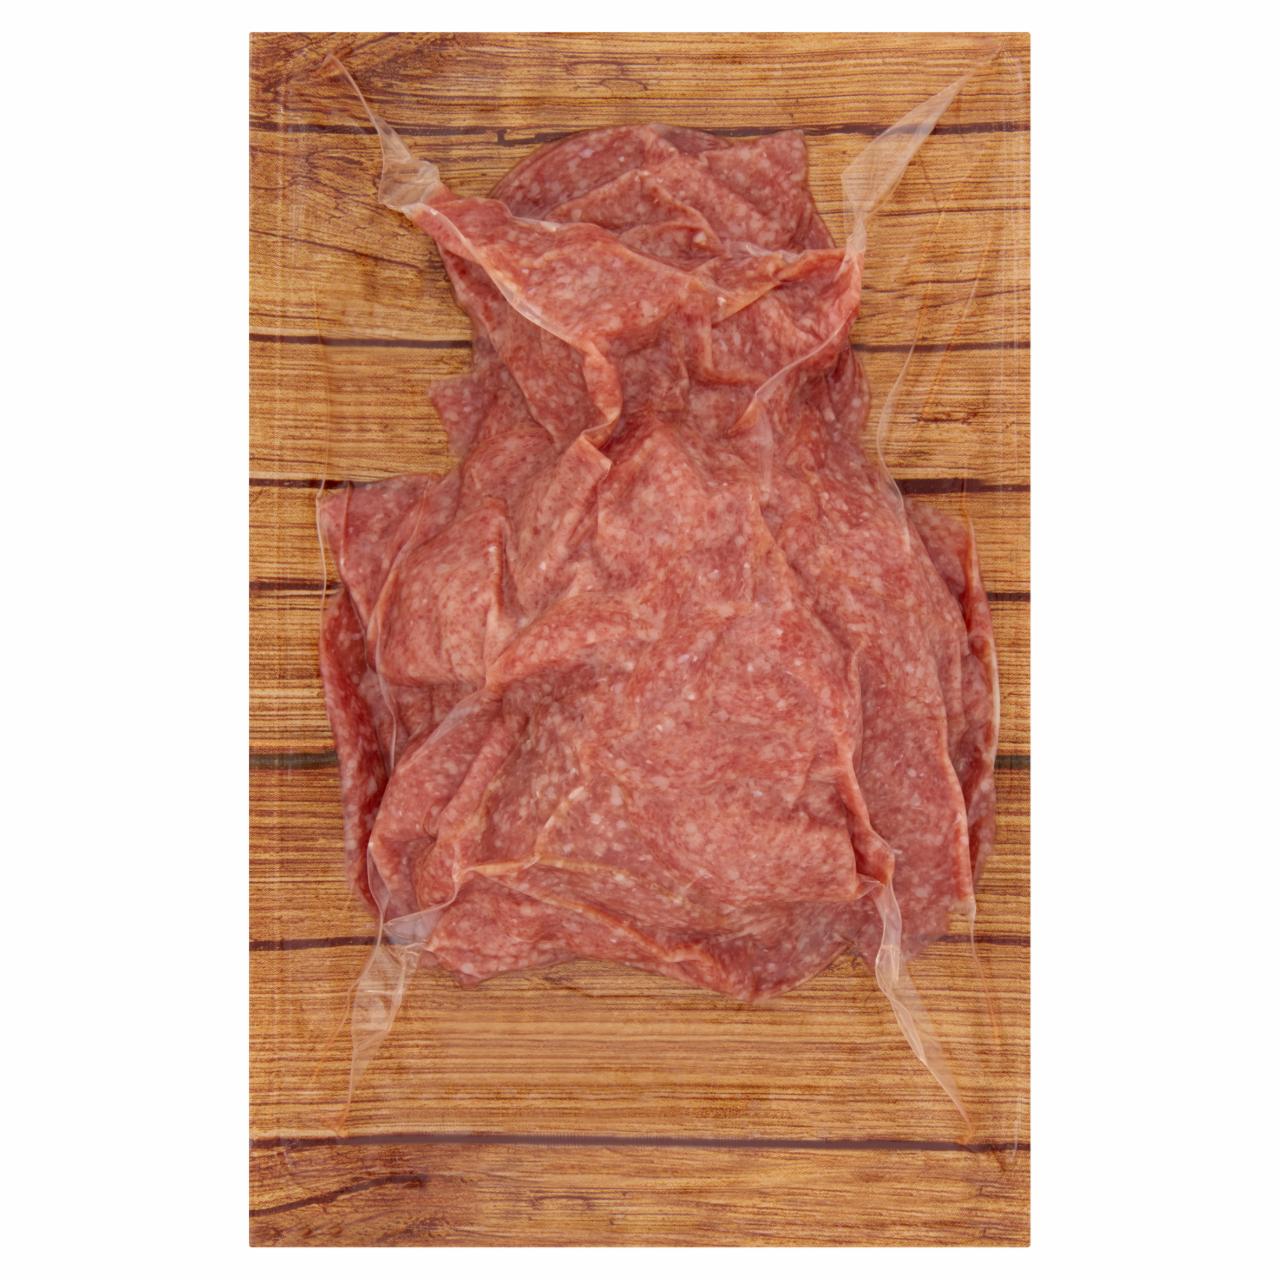 Képek - Kamarko füstölt, szeletelt húskészítmény pulykahúsból 200 g